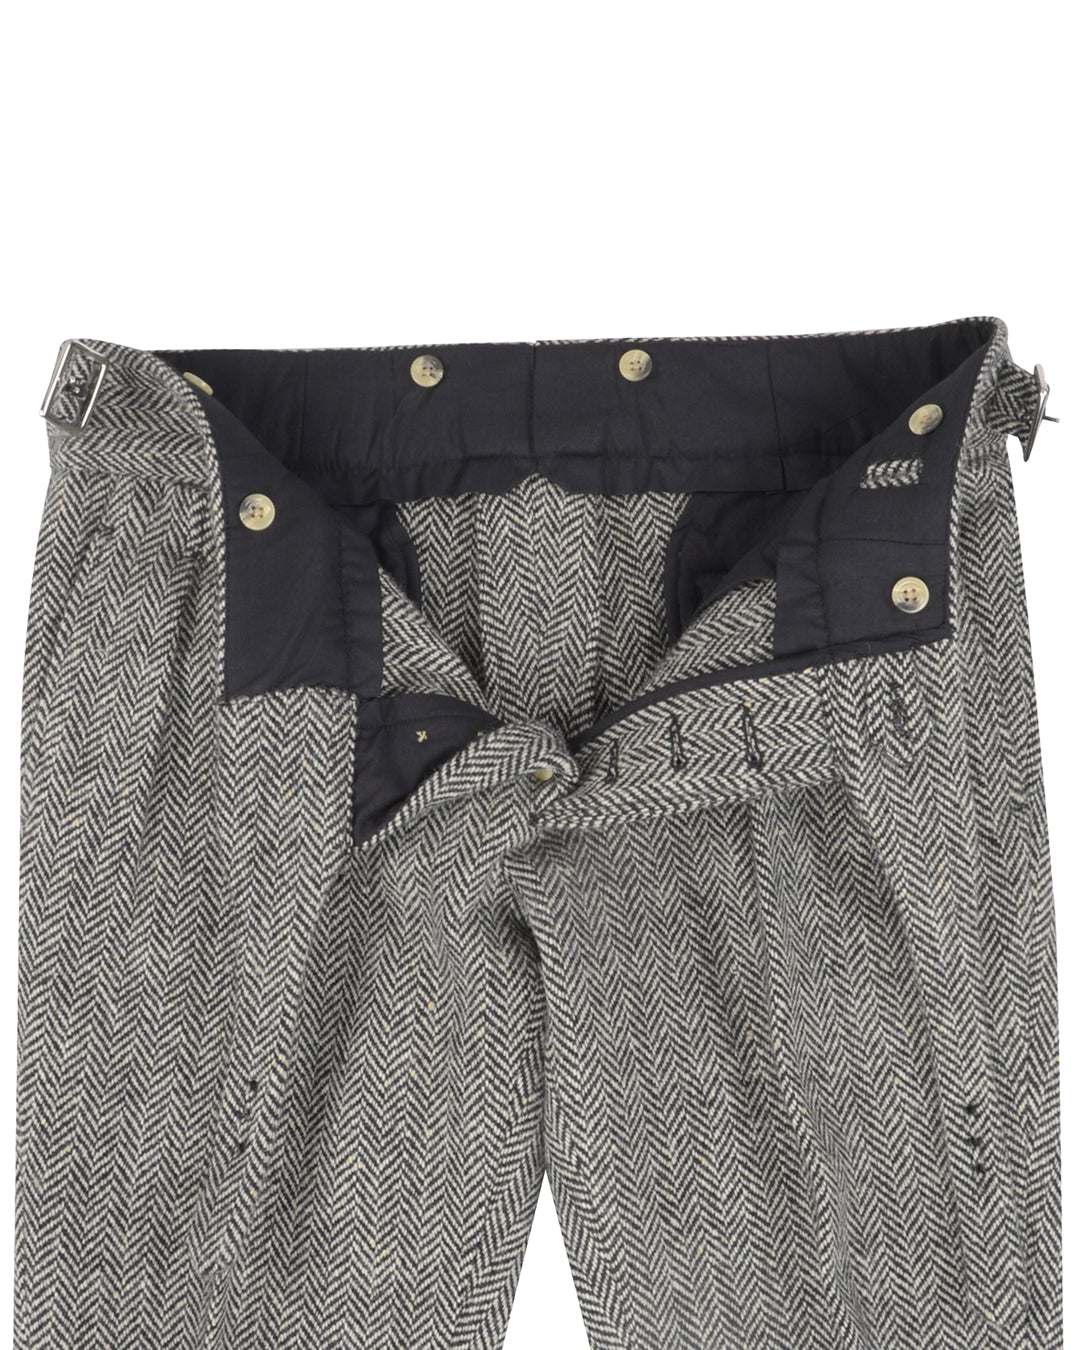 Molloy Herringbone Donegal Tweed Pants - Grey